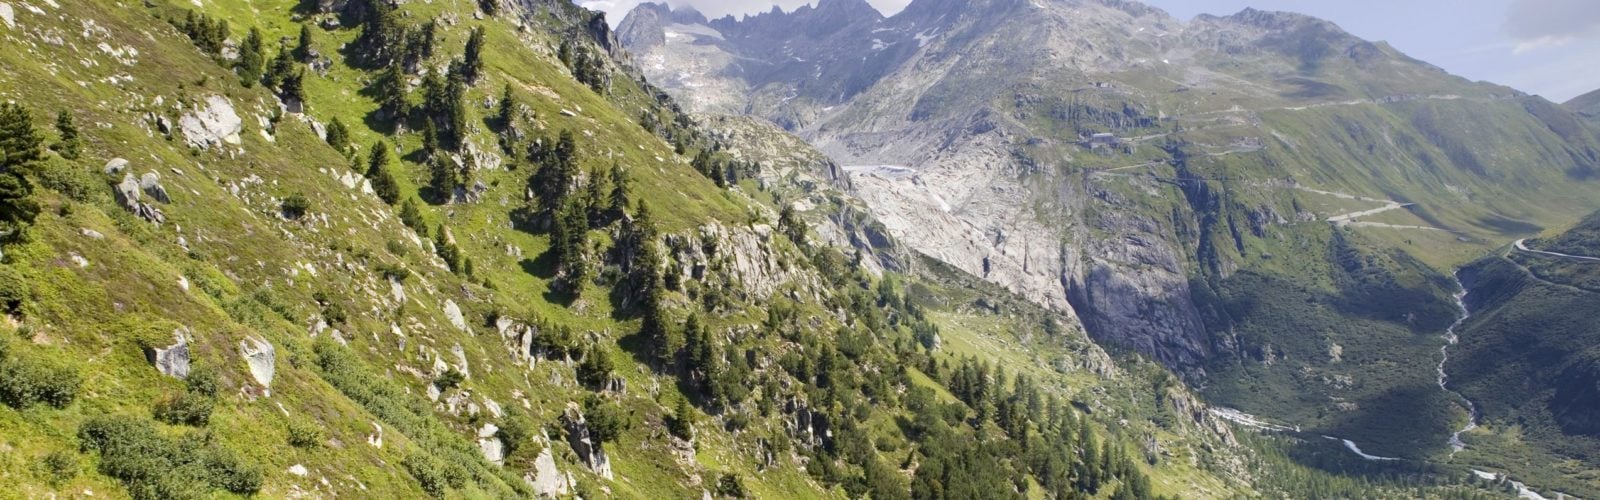 gstaad-steep-mountain